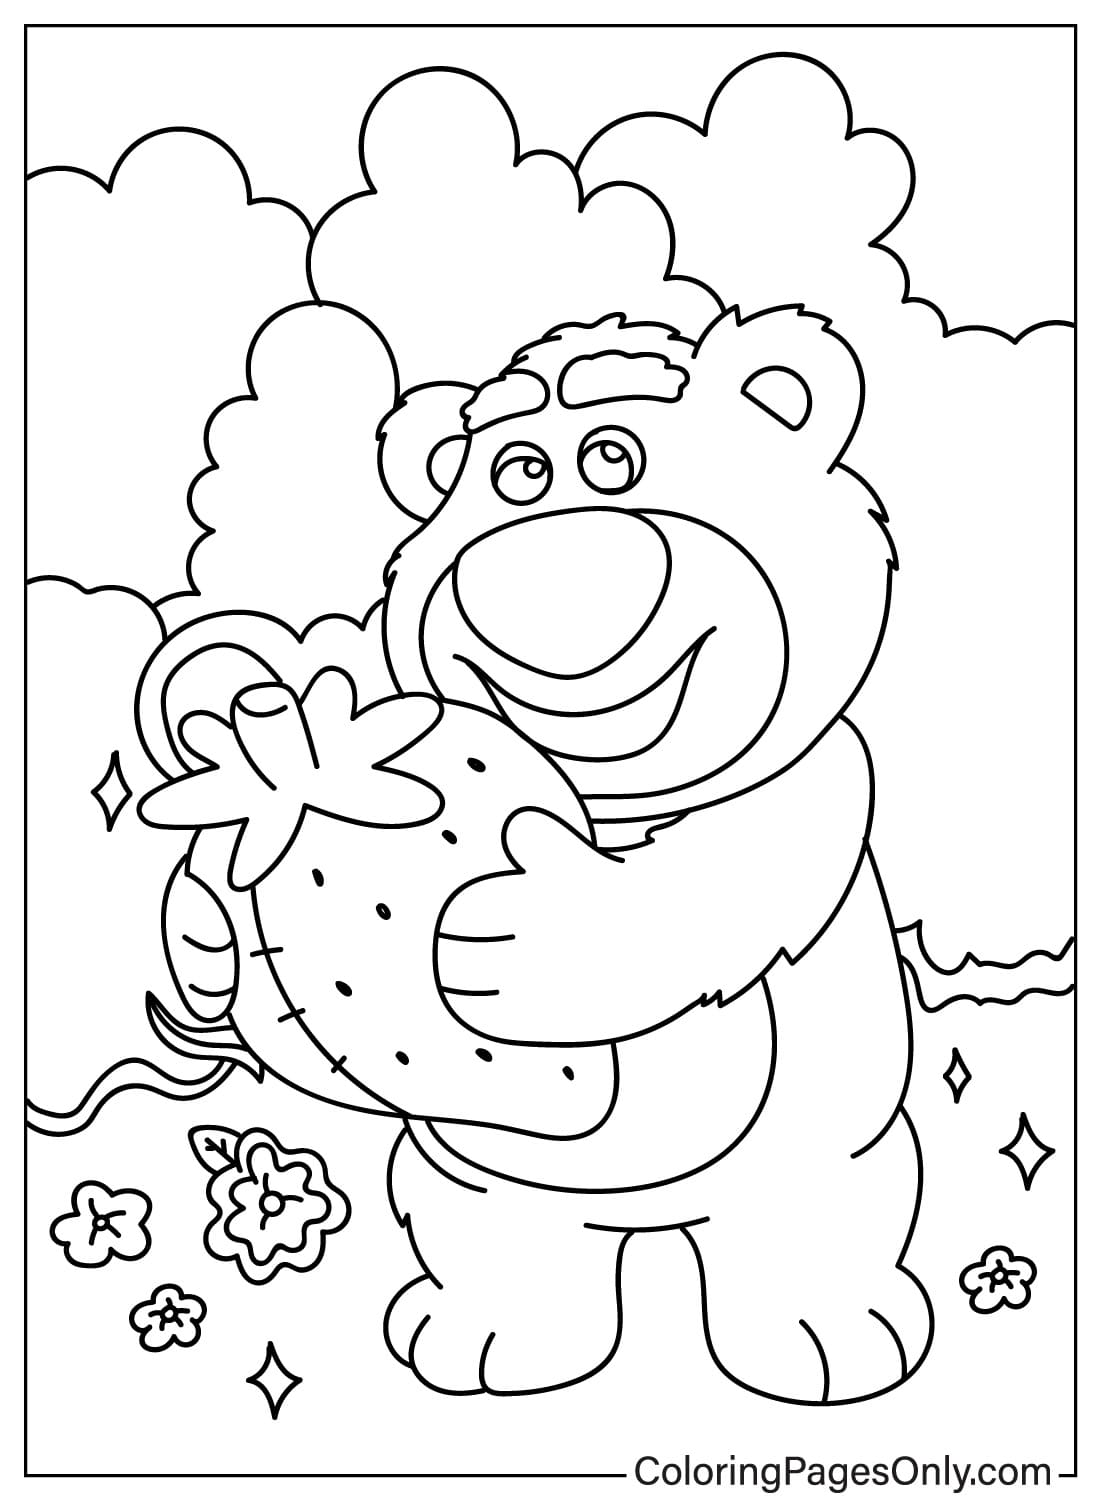 Lotso Coloring Page Free from Lotso Bear